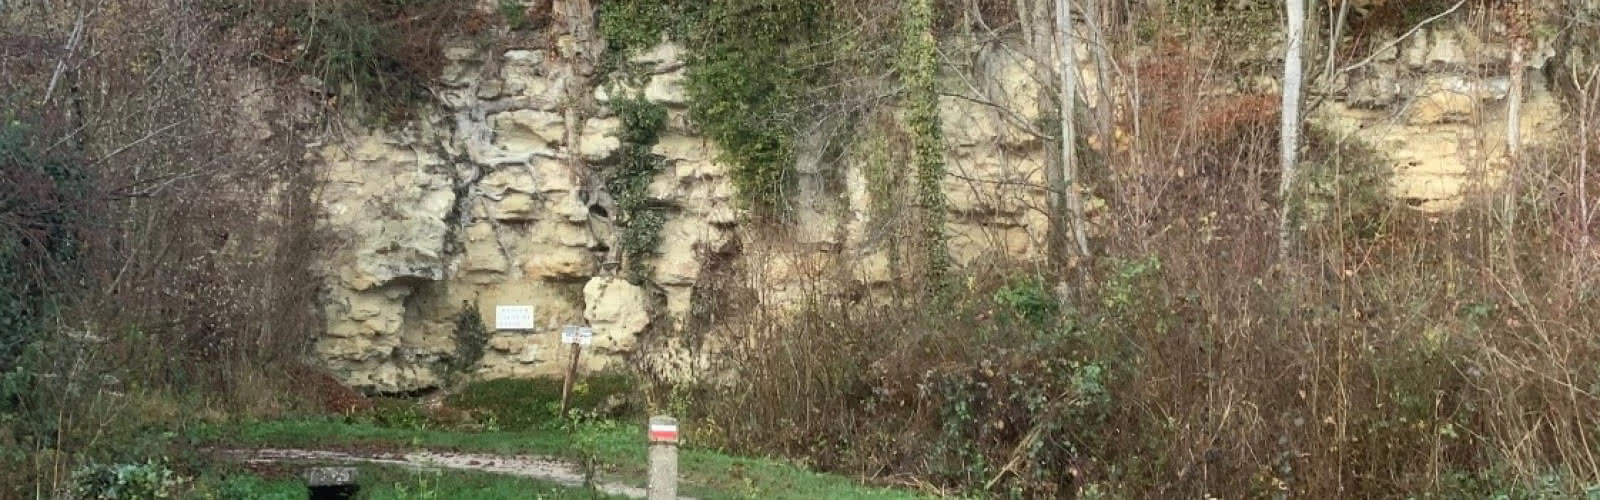 La source de la Cressonnière, issue du calcaire grossier du Lutétien